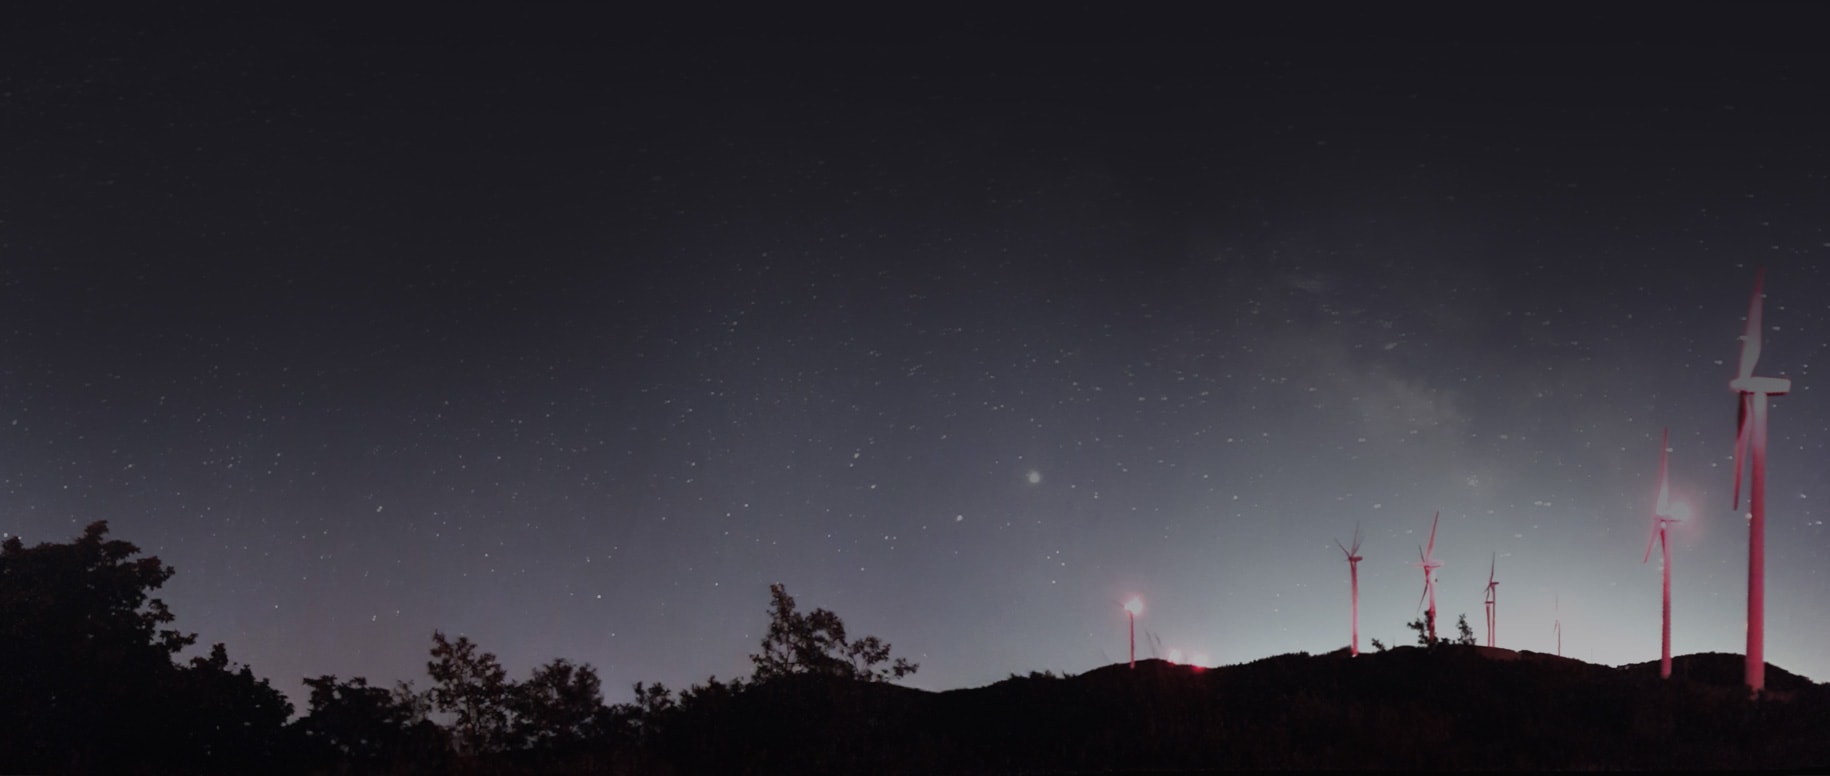 Uma pequena colina é pontilhada por turbinas eólicas iluminadas em vermelho em primeiro plano, com um céu estrelado ao fundo.